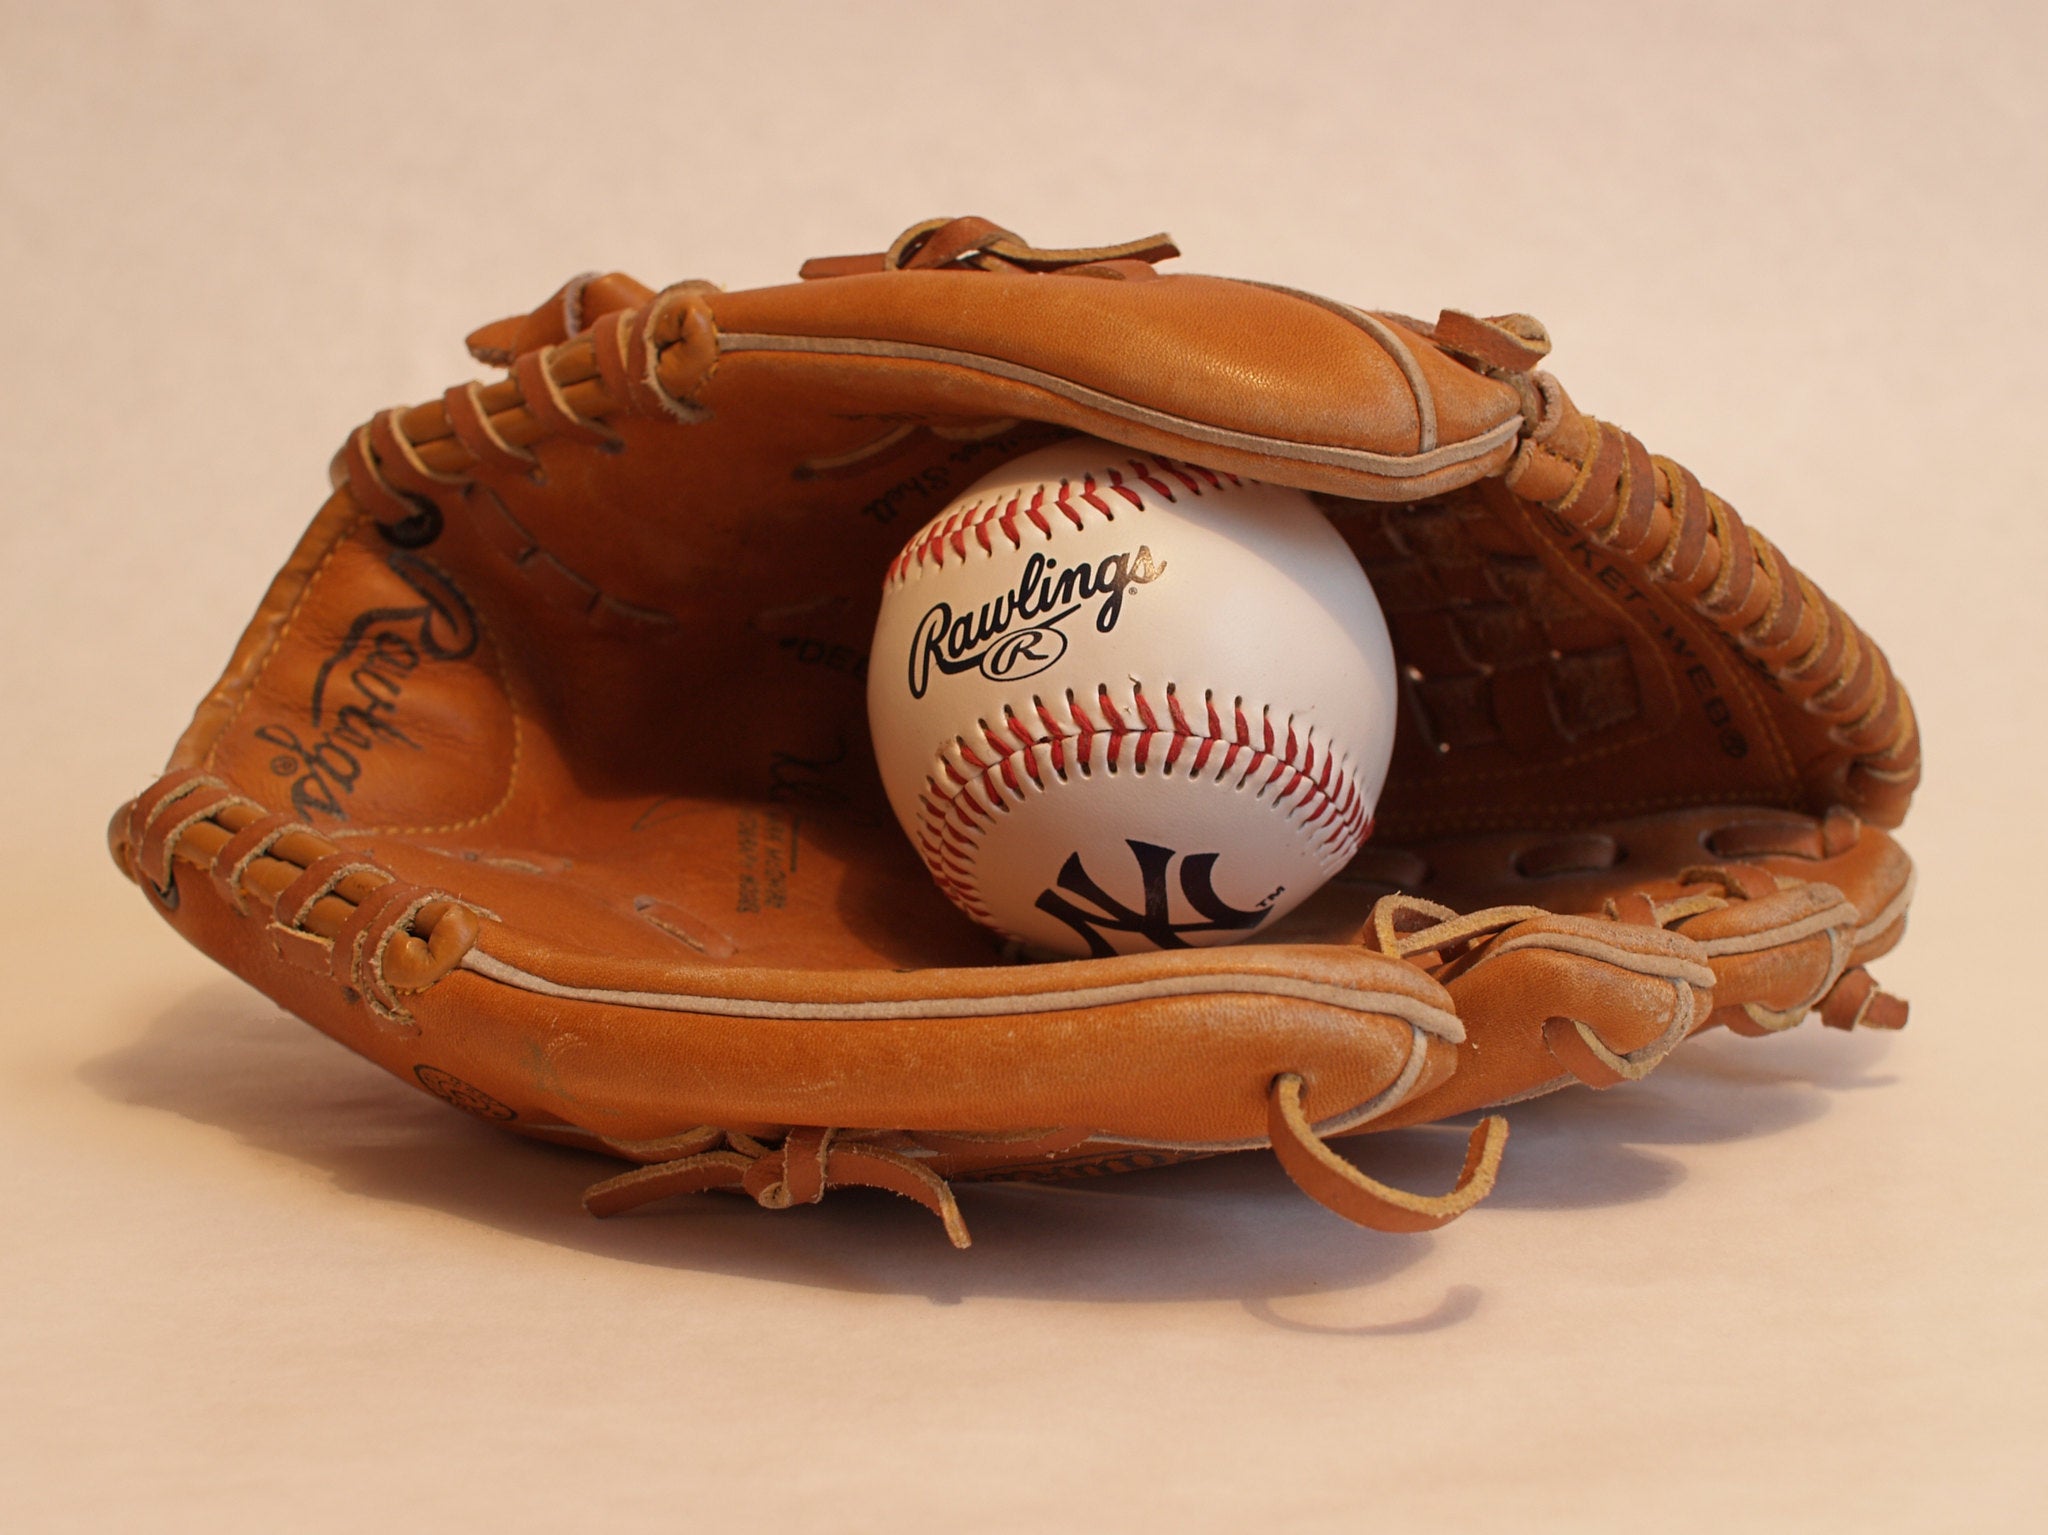 A baseball in a glove. 